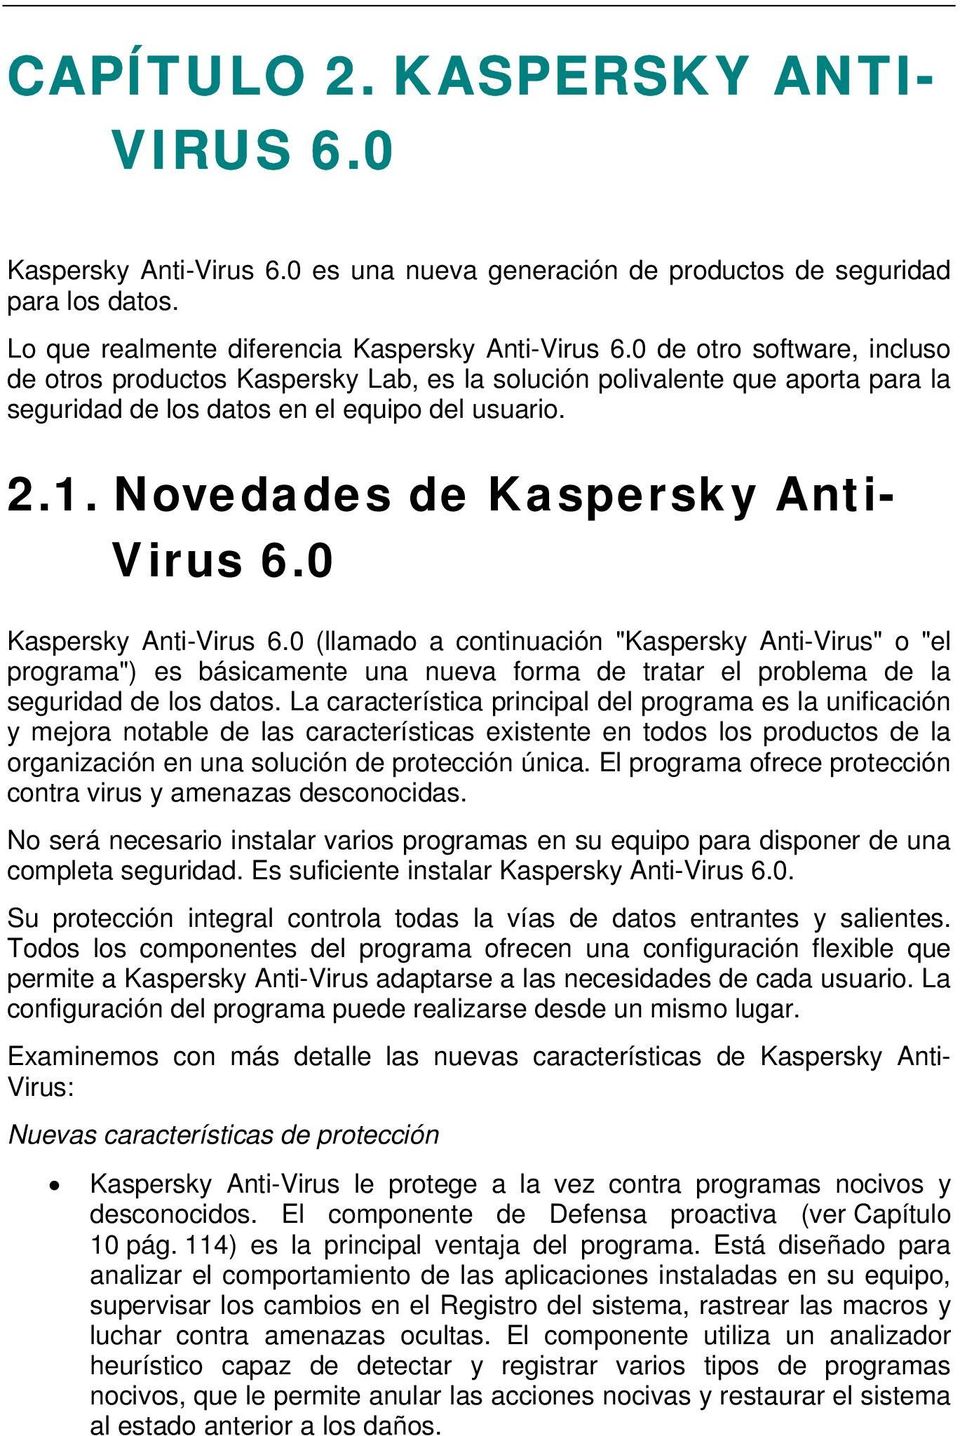 0 Kaspersky Anti-Virus 6.0 (llamado a continuación "Kaspersky Anti-Virus" o "el programa") es básicamente una nueva forma de tratar el problema de la seguridad de los datos.